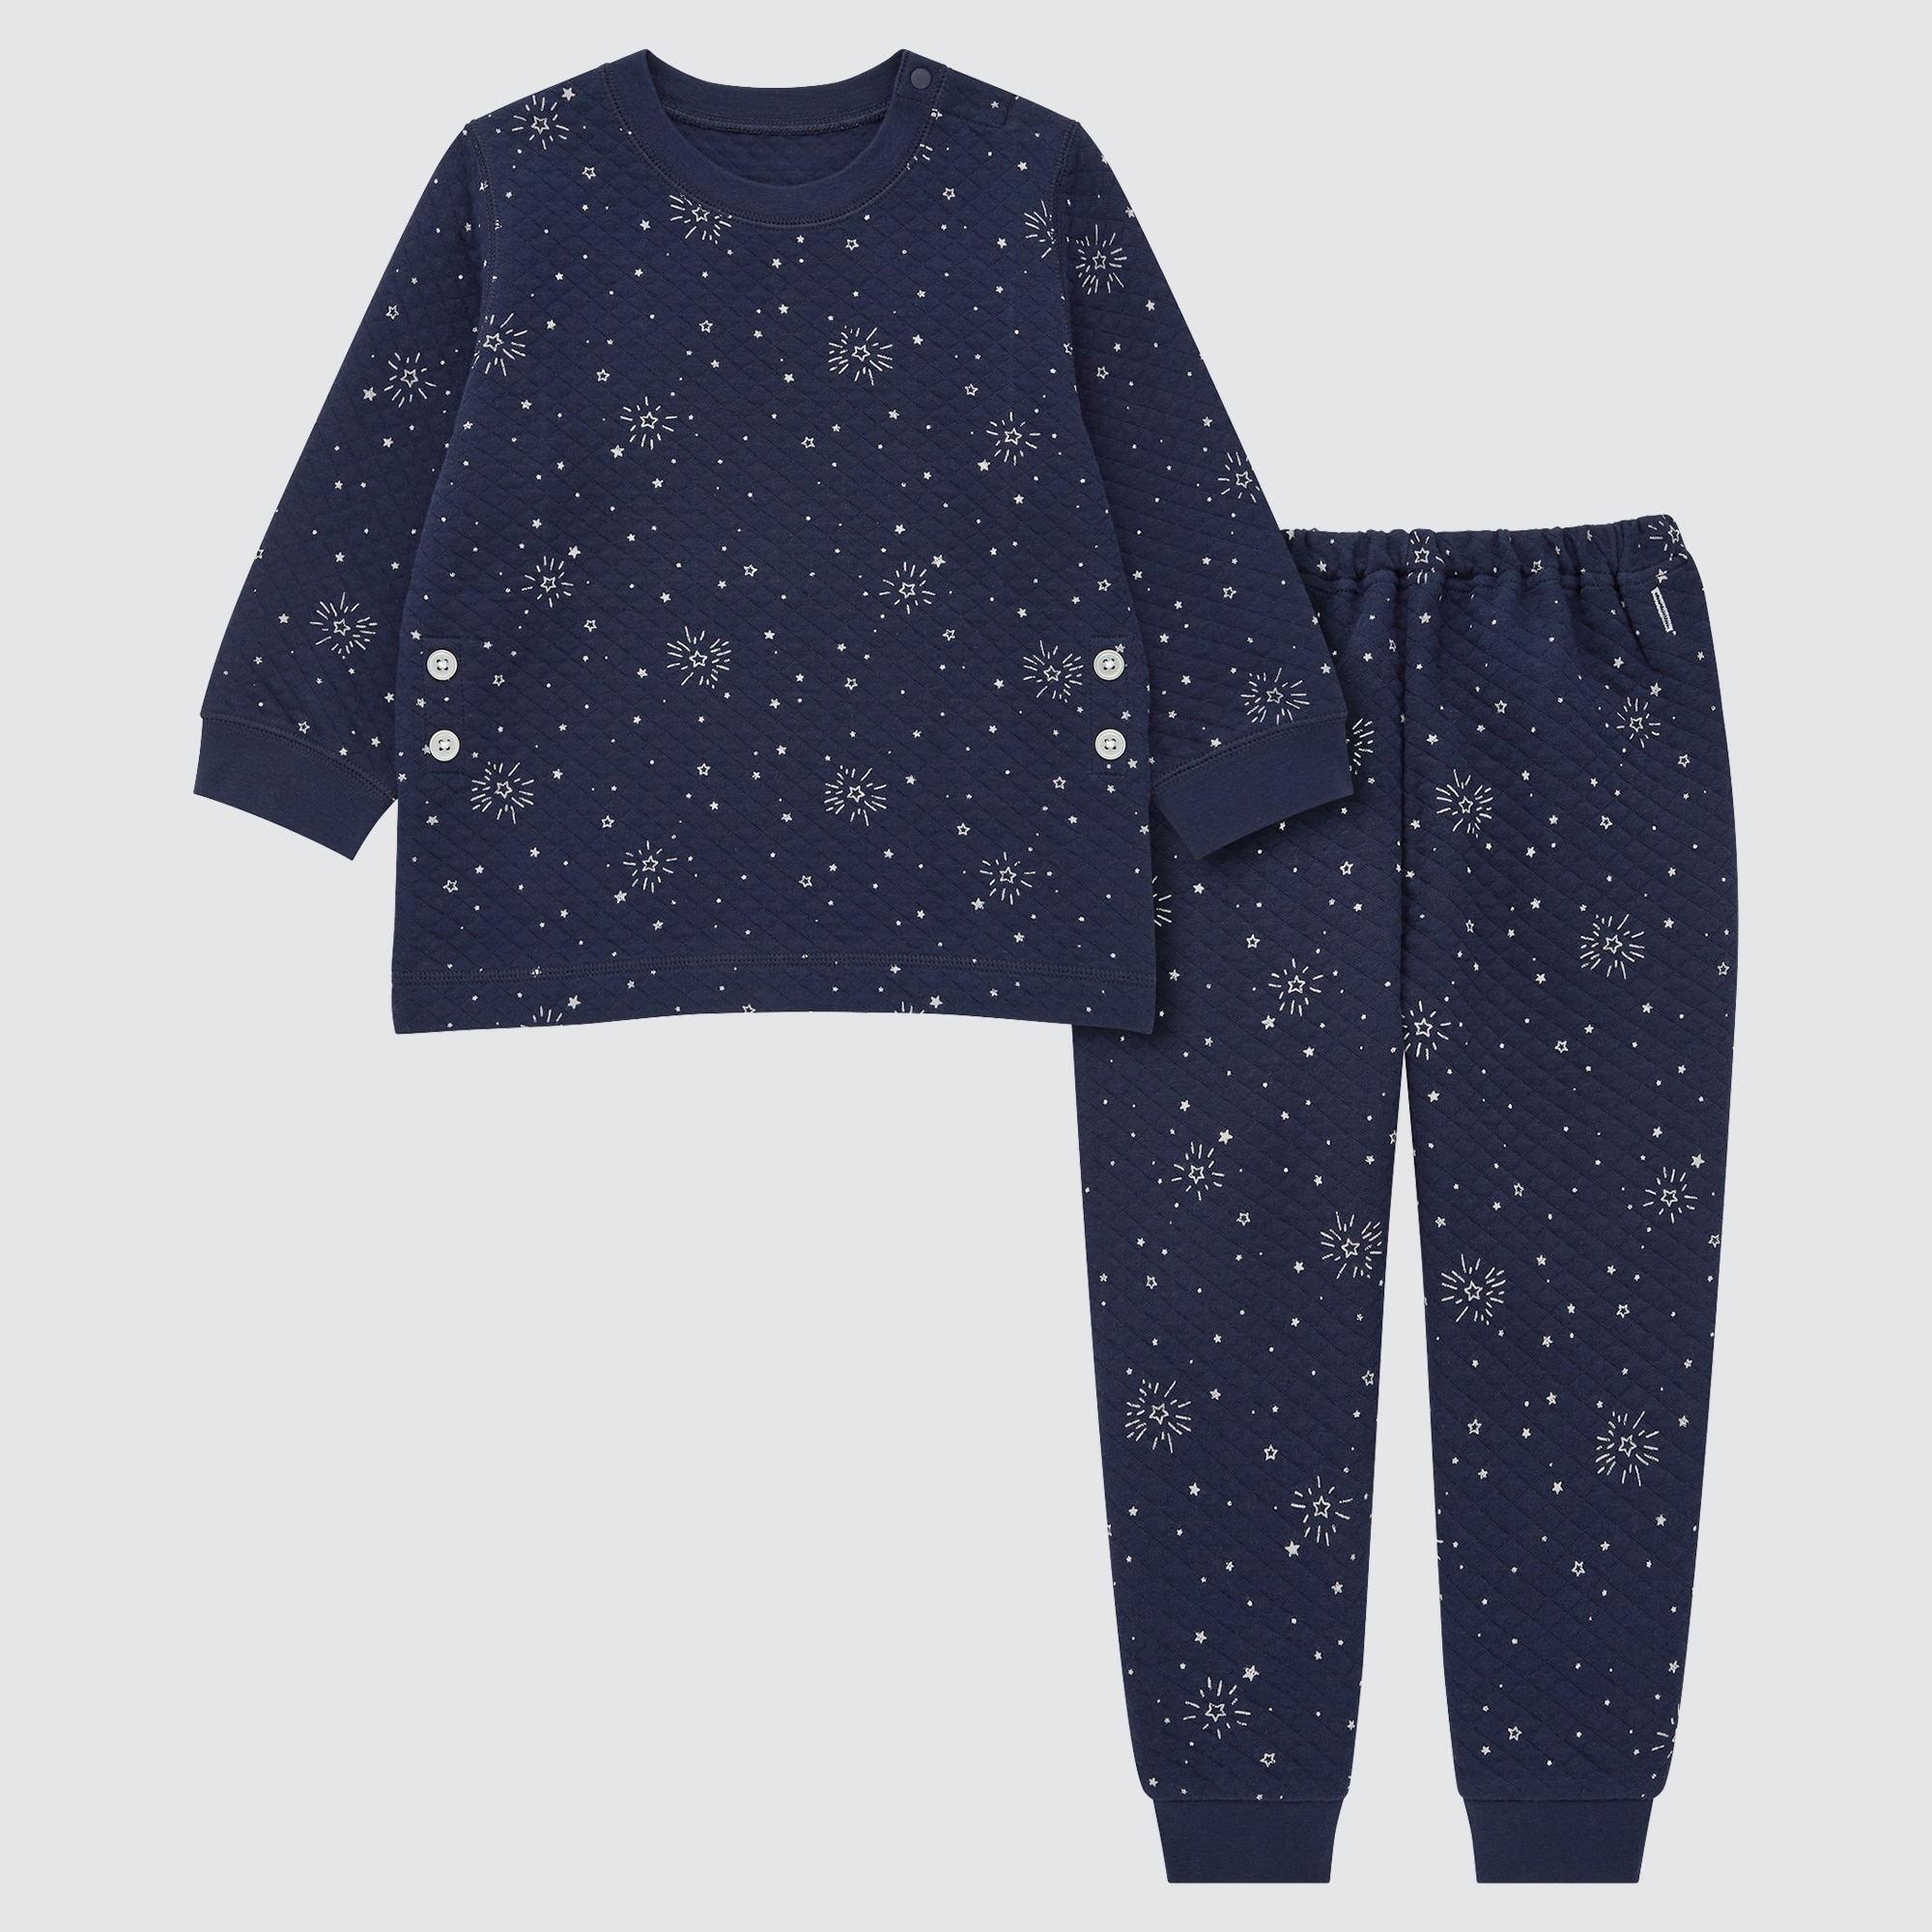 ユニクロ キルトパジャマ 星柄 100サイズ - パジャマ